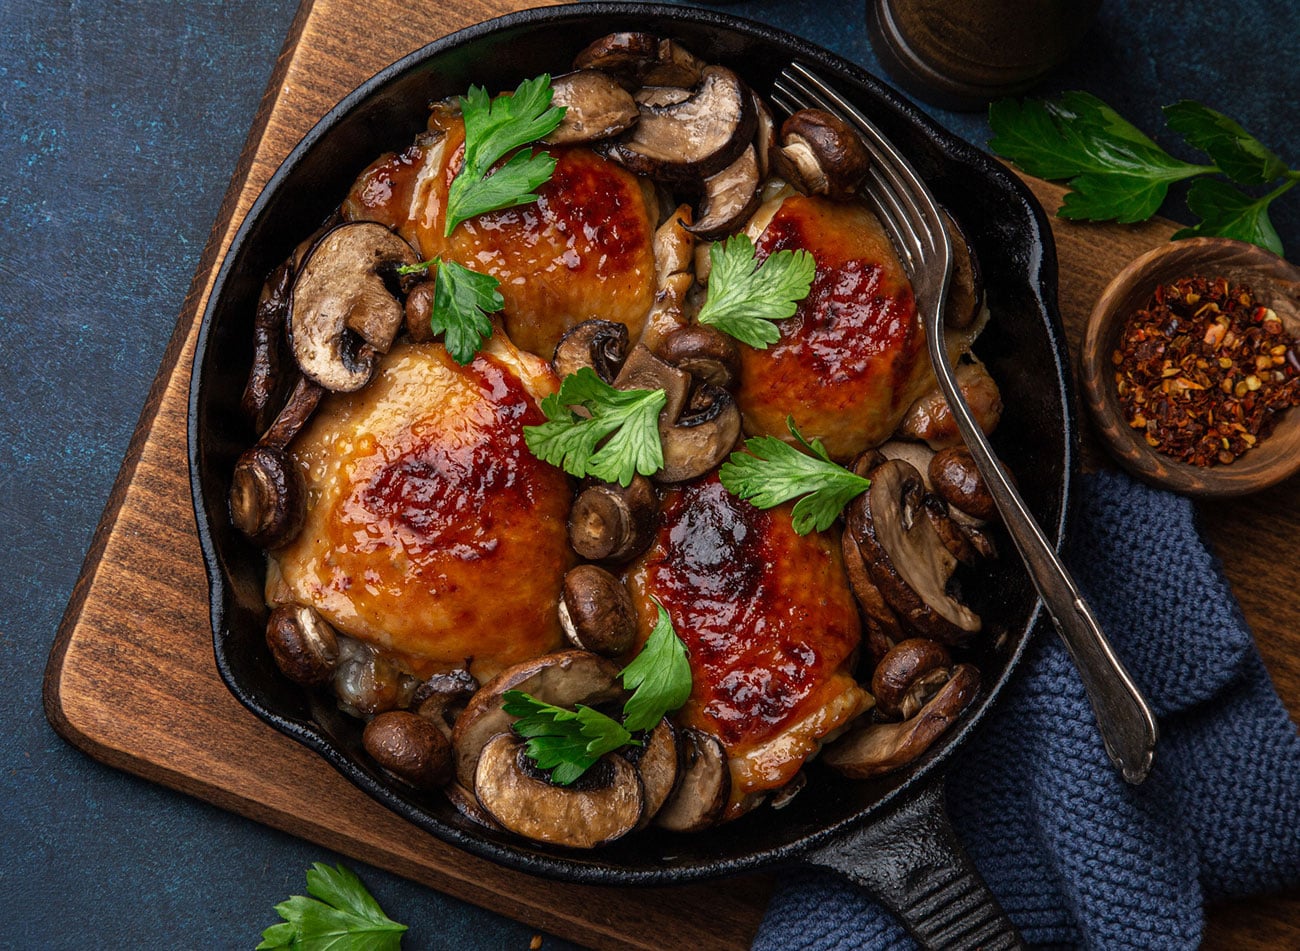 Cuisses de poulet aux champignons : le plat réconfort par excellence